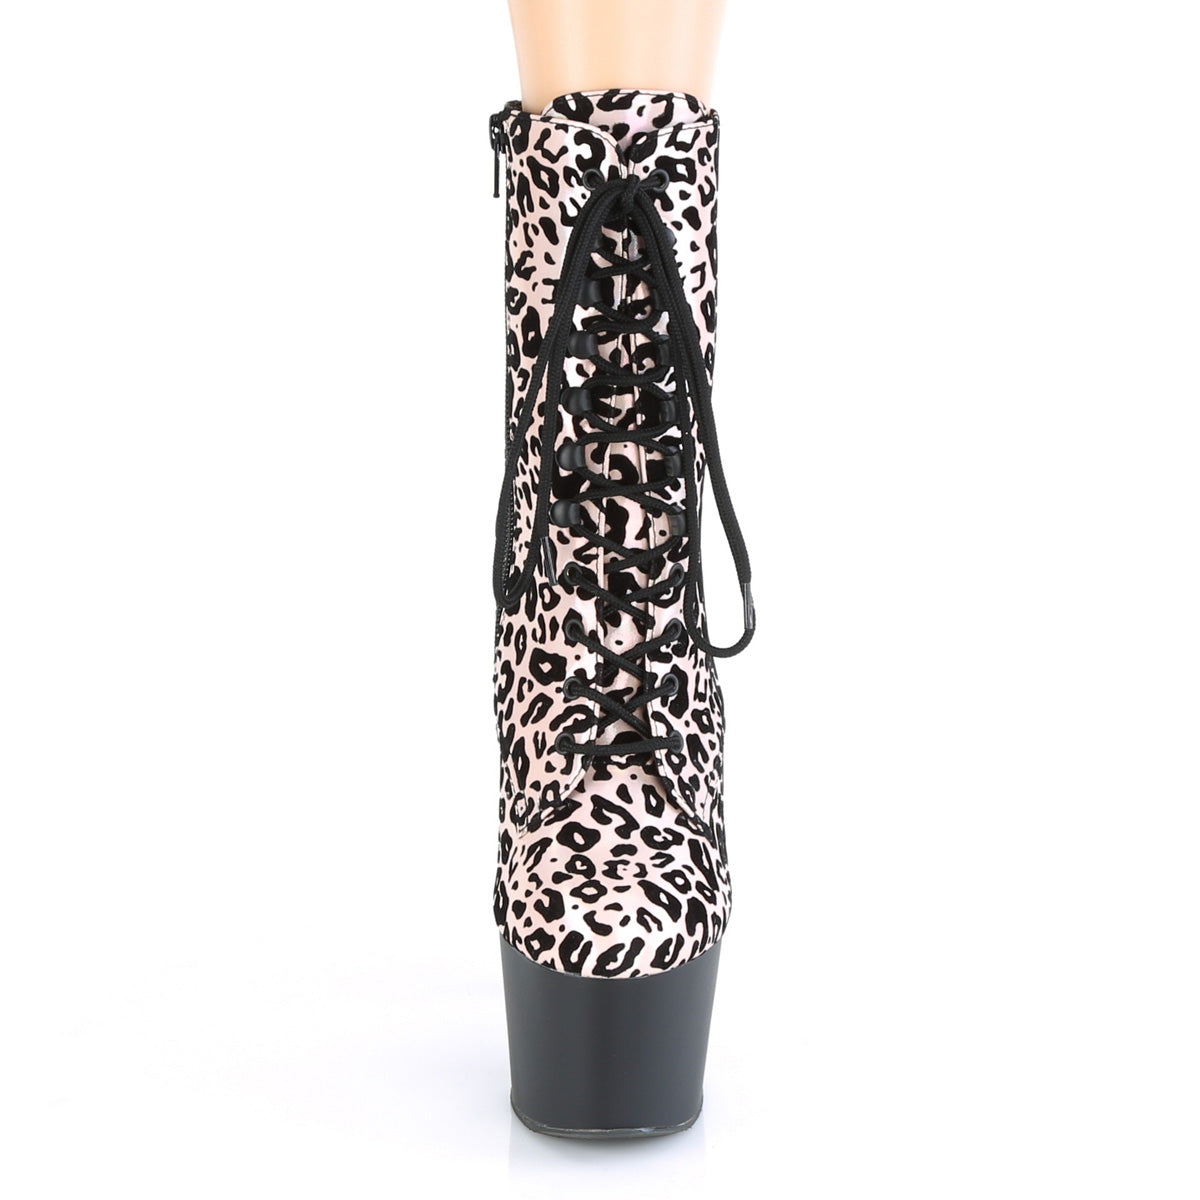 Pleaser Womens Ankle Boots ADORE-1020LP Lt. Pink Leopard Print Holo/Blk Matte